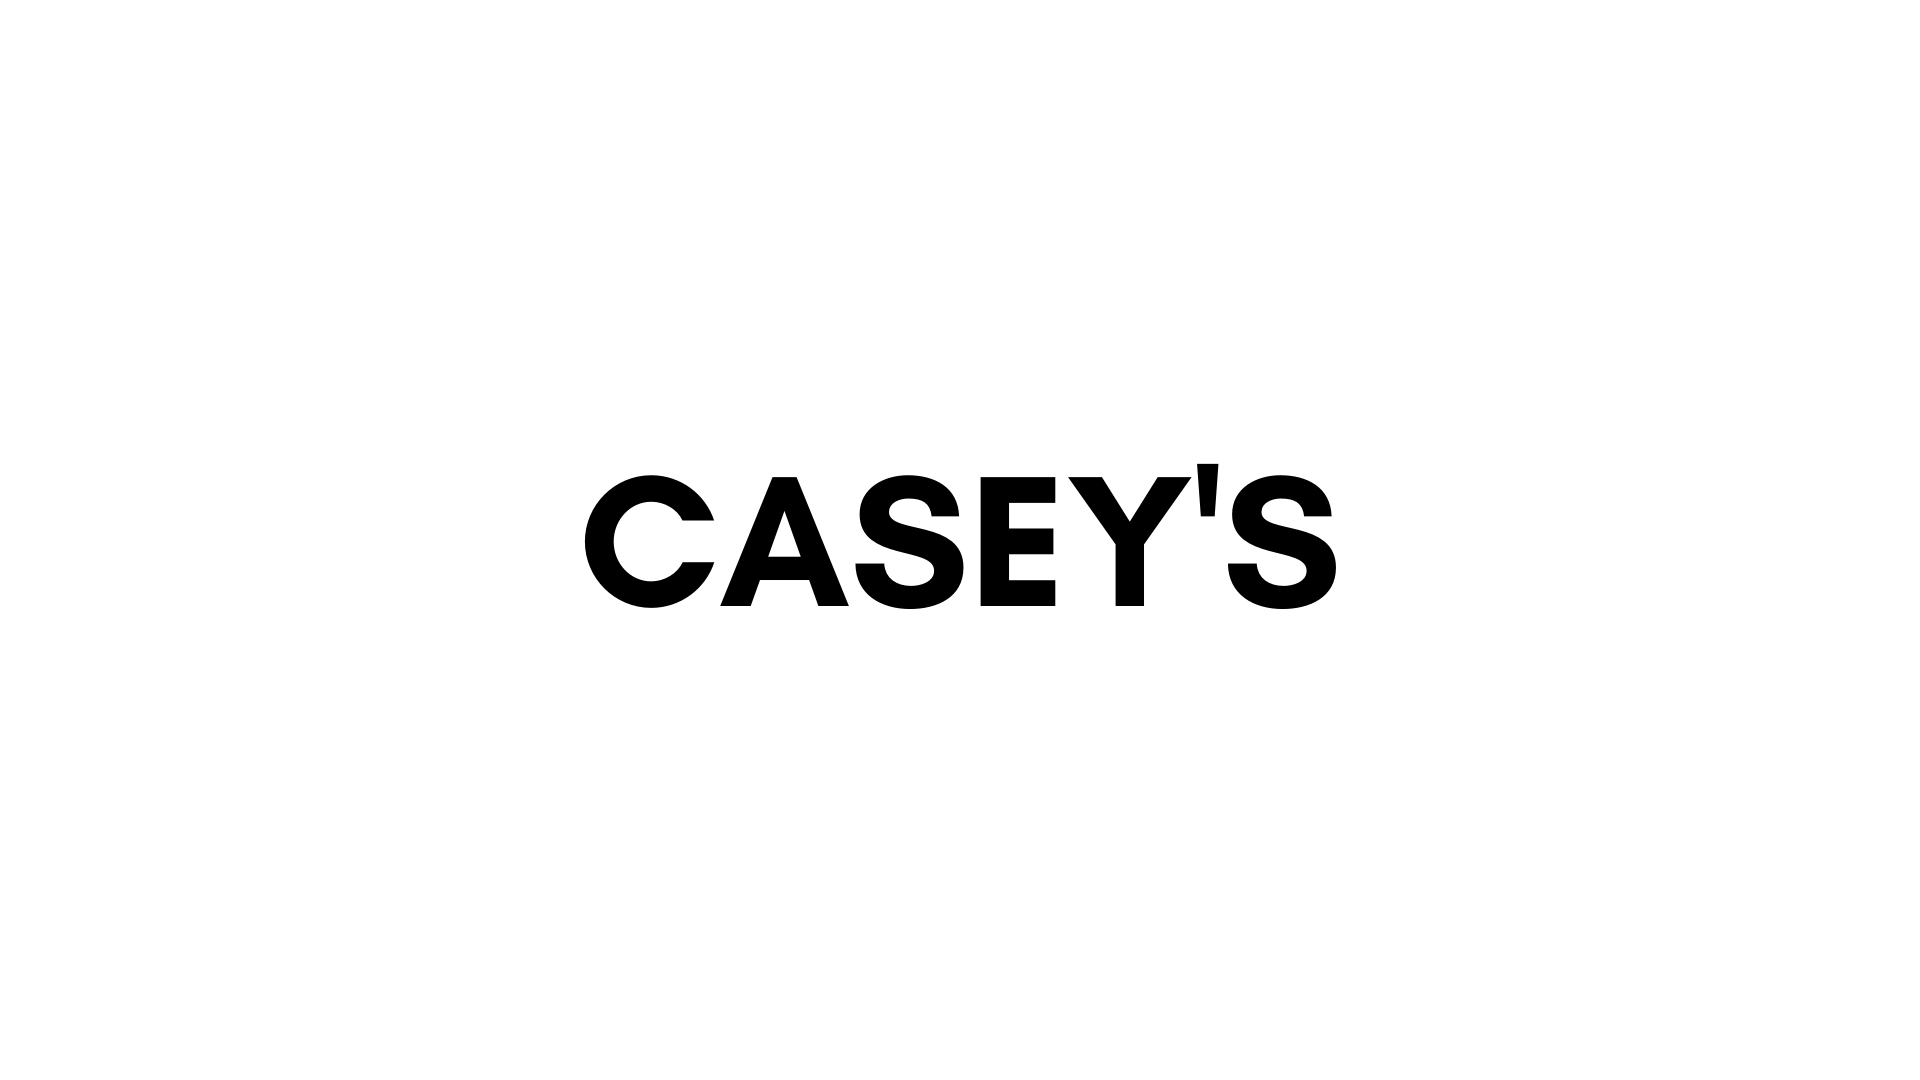 CASEY'S